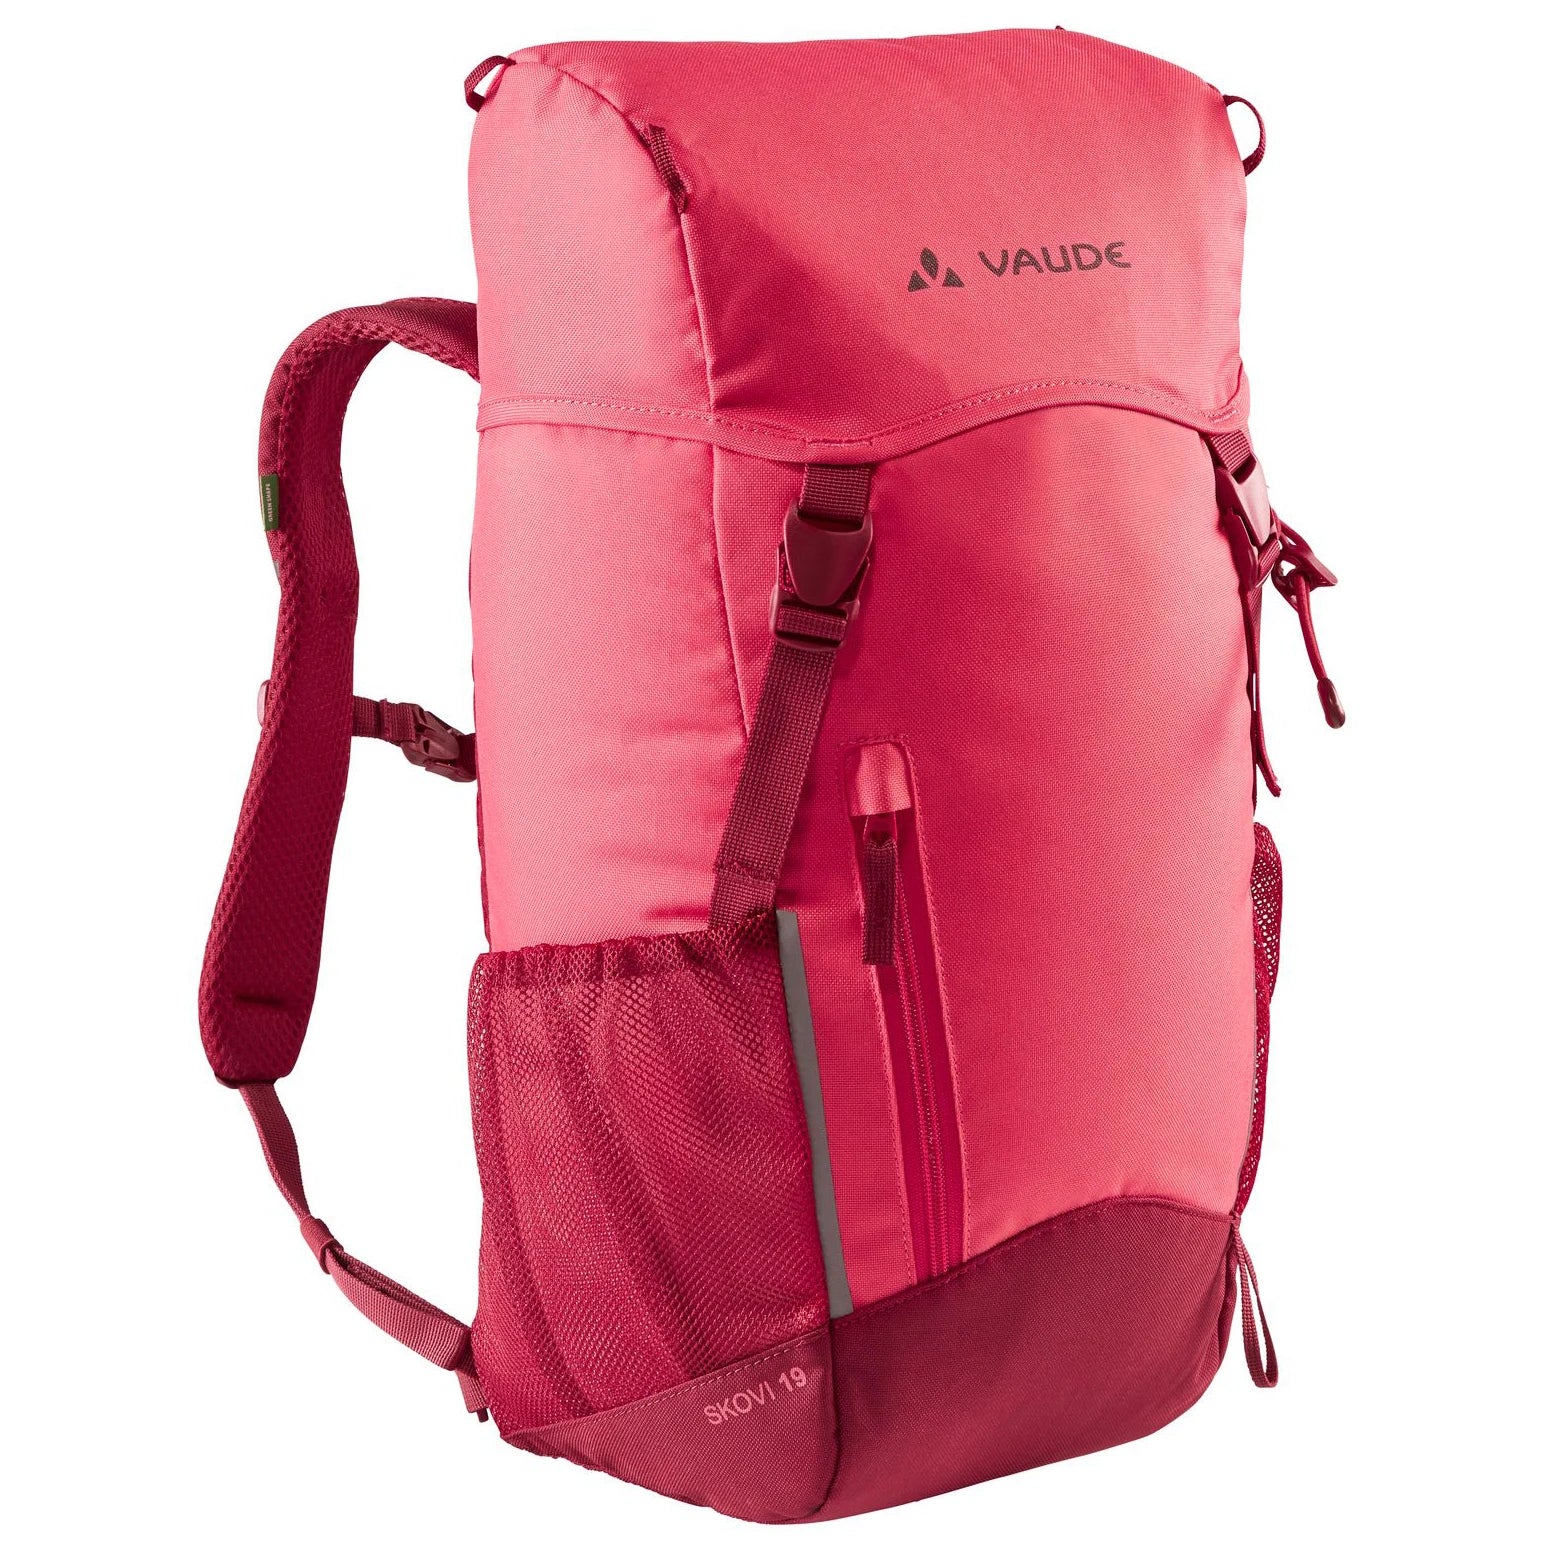 Vaude Family Skovi 19 children's backpack 48 cm - bright pink